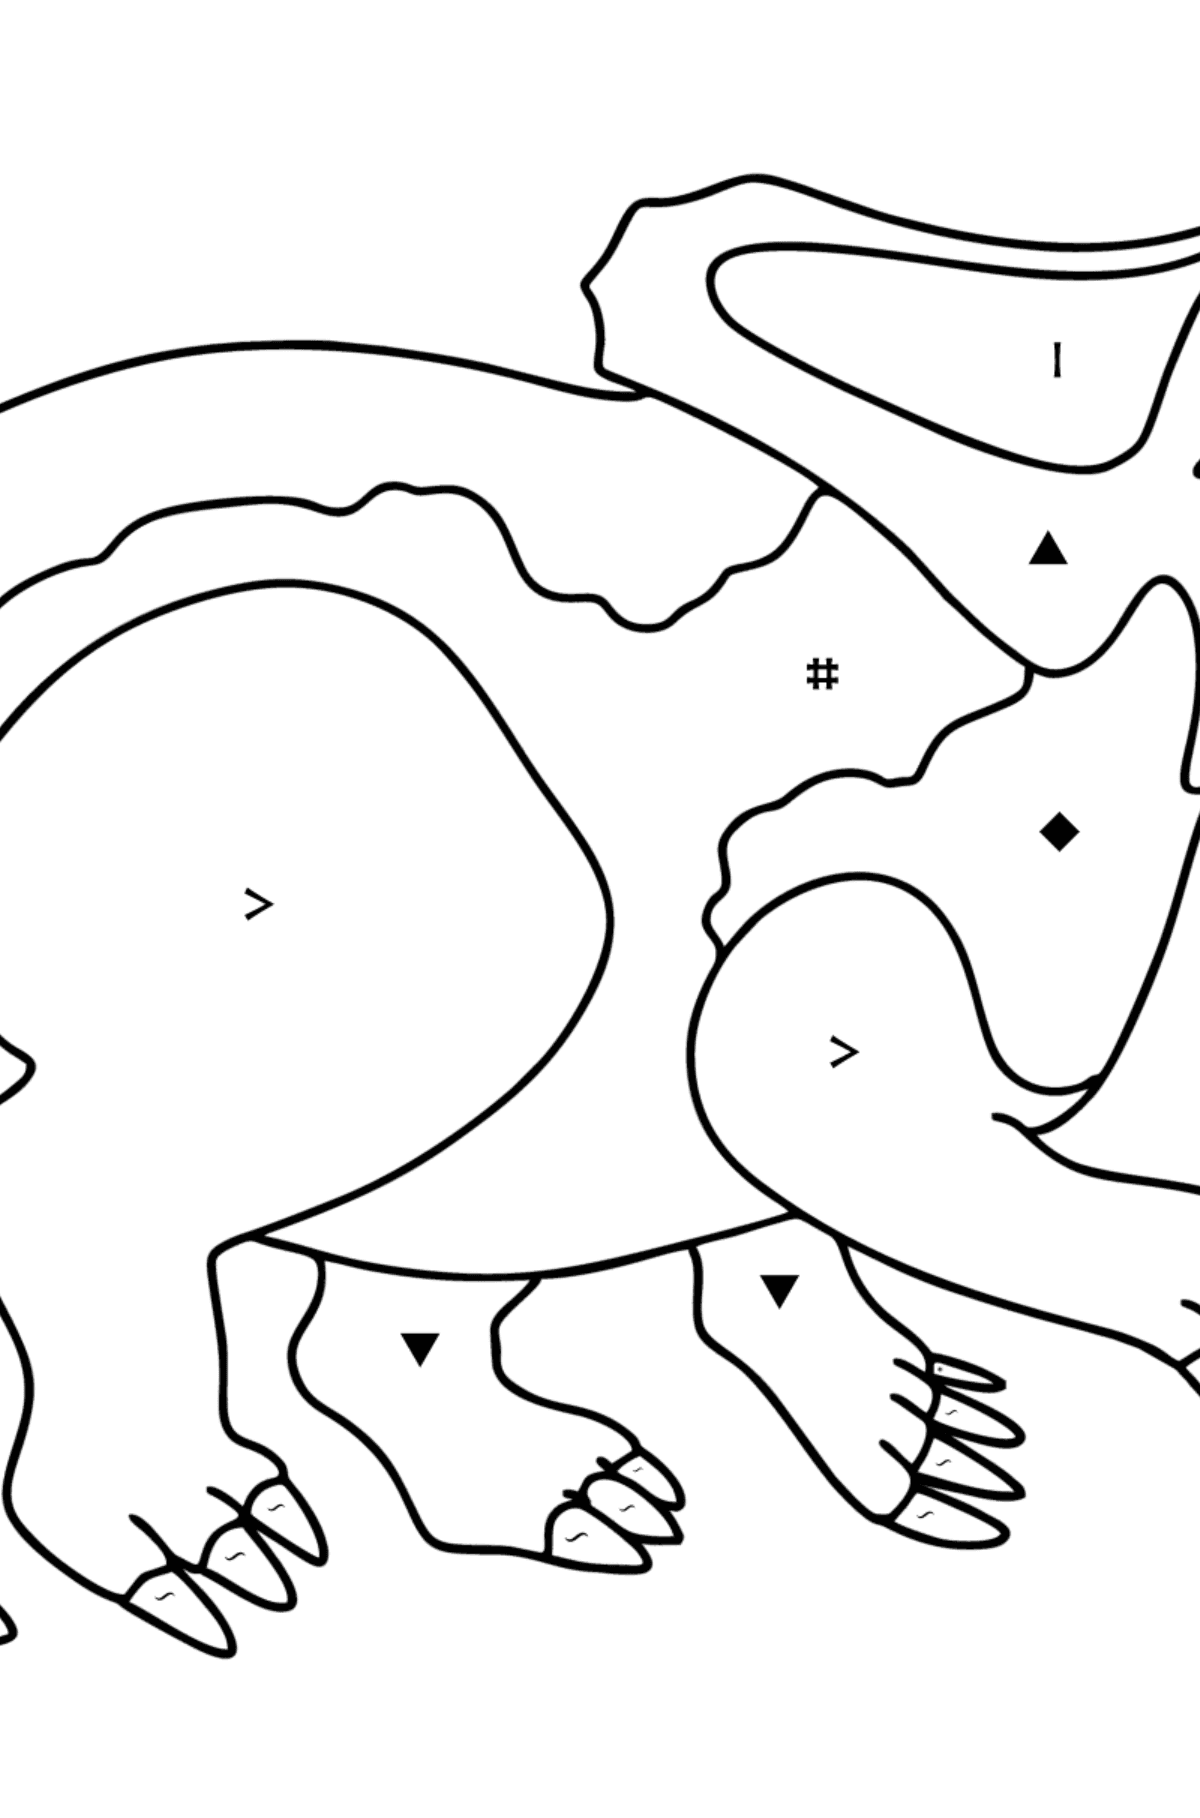 Dibujo de Protoceratops para colorear - Colorear por Símbolos para Niños